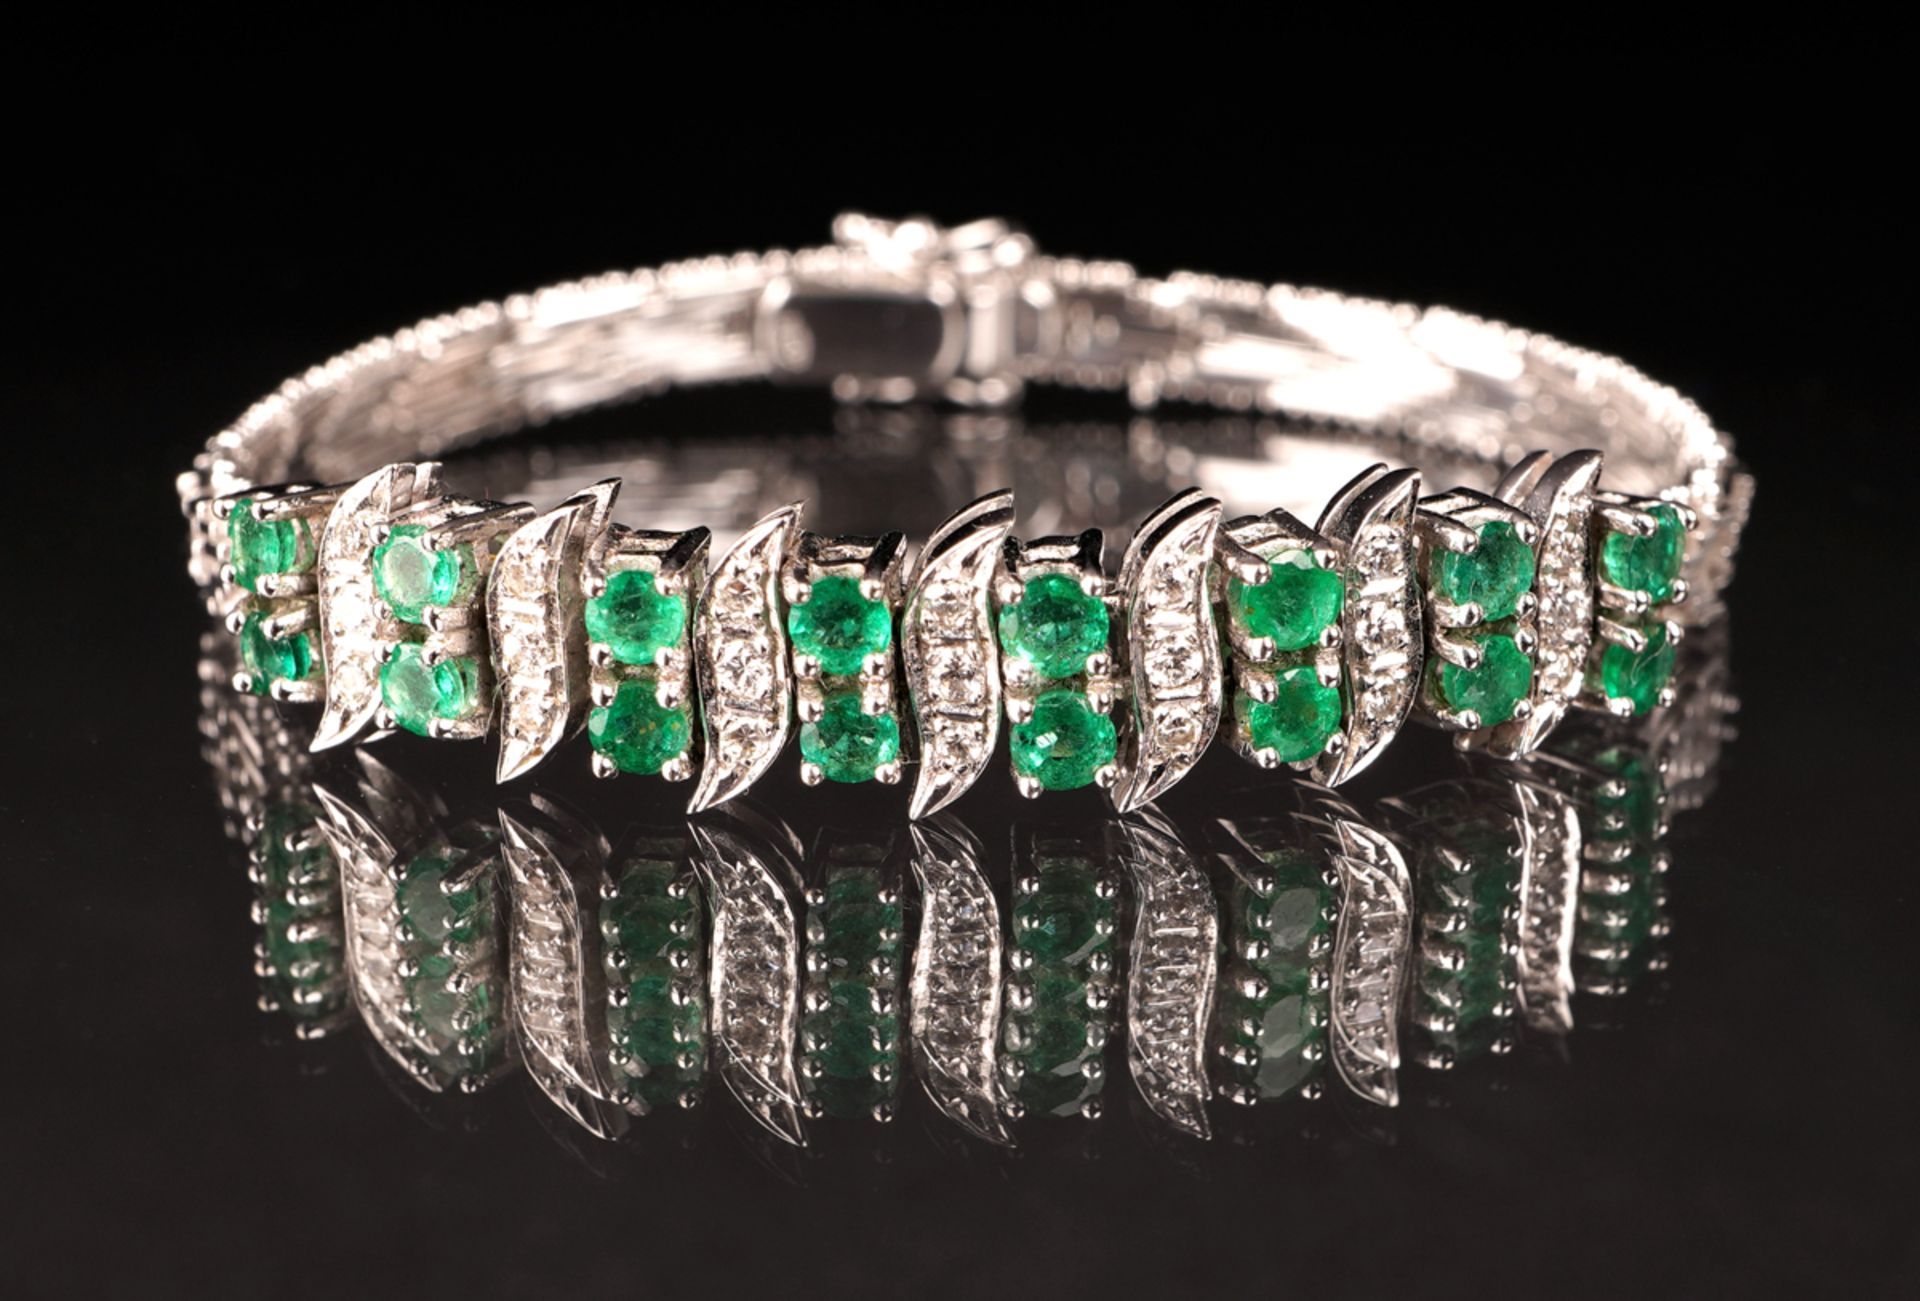 Armband mit Smaragd- und Diamantbesatz, WG 585 - Bild 2 aus 5